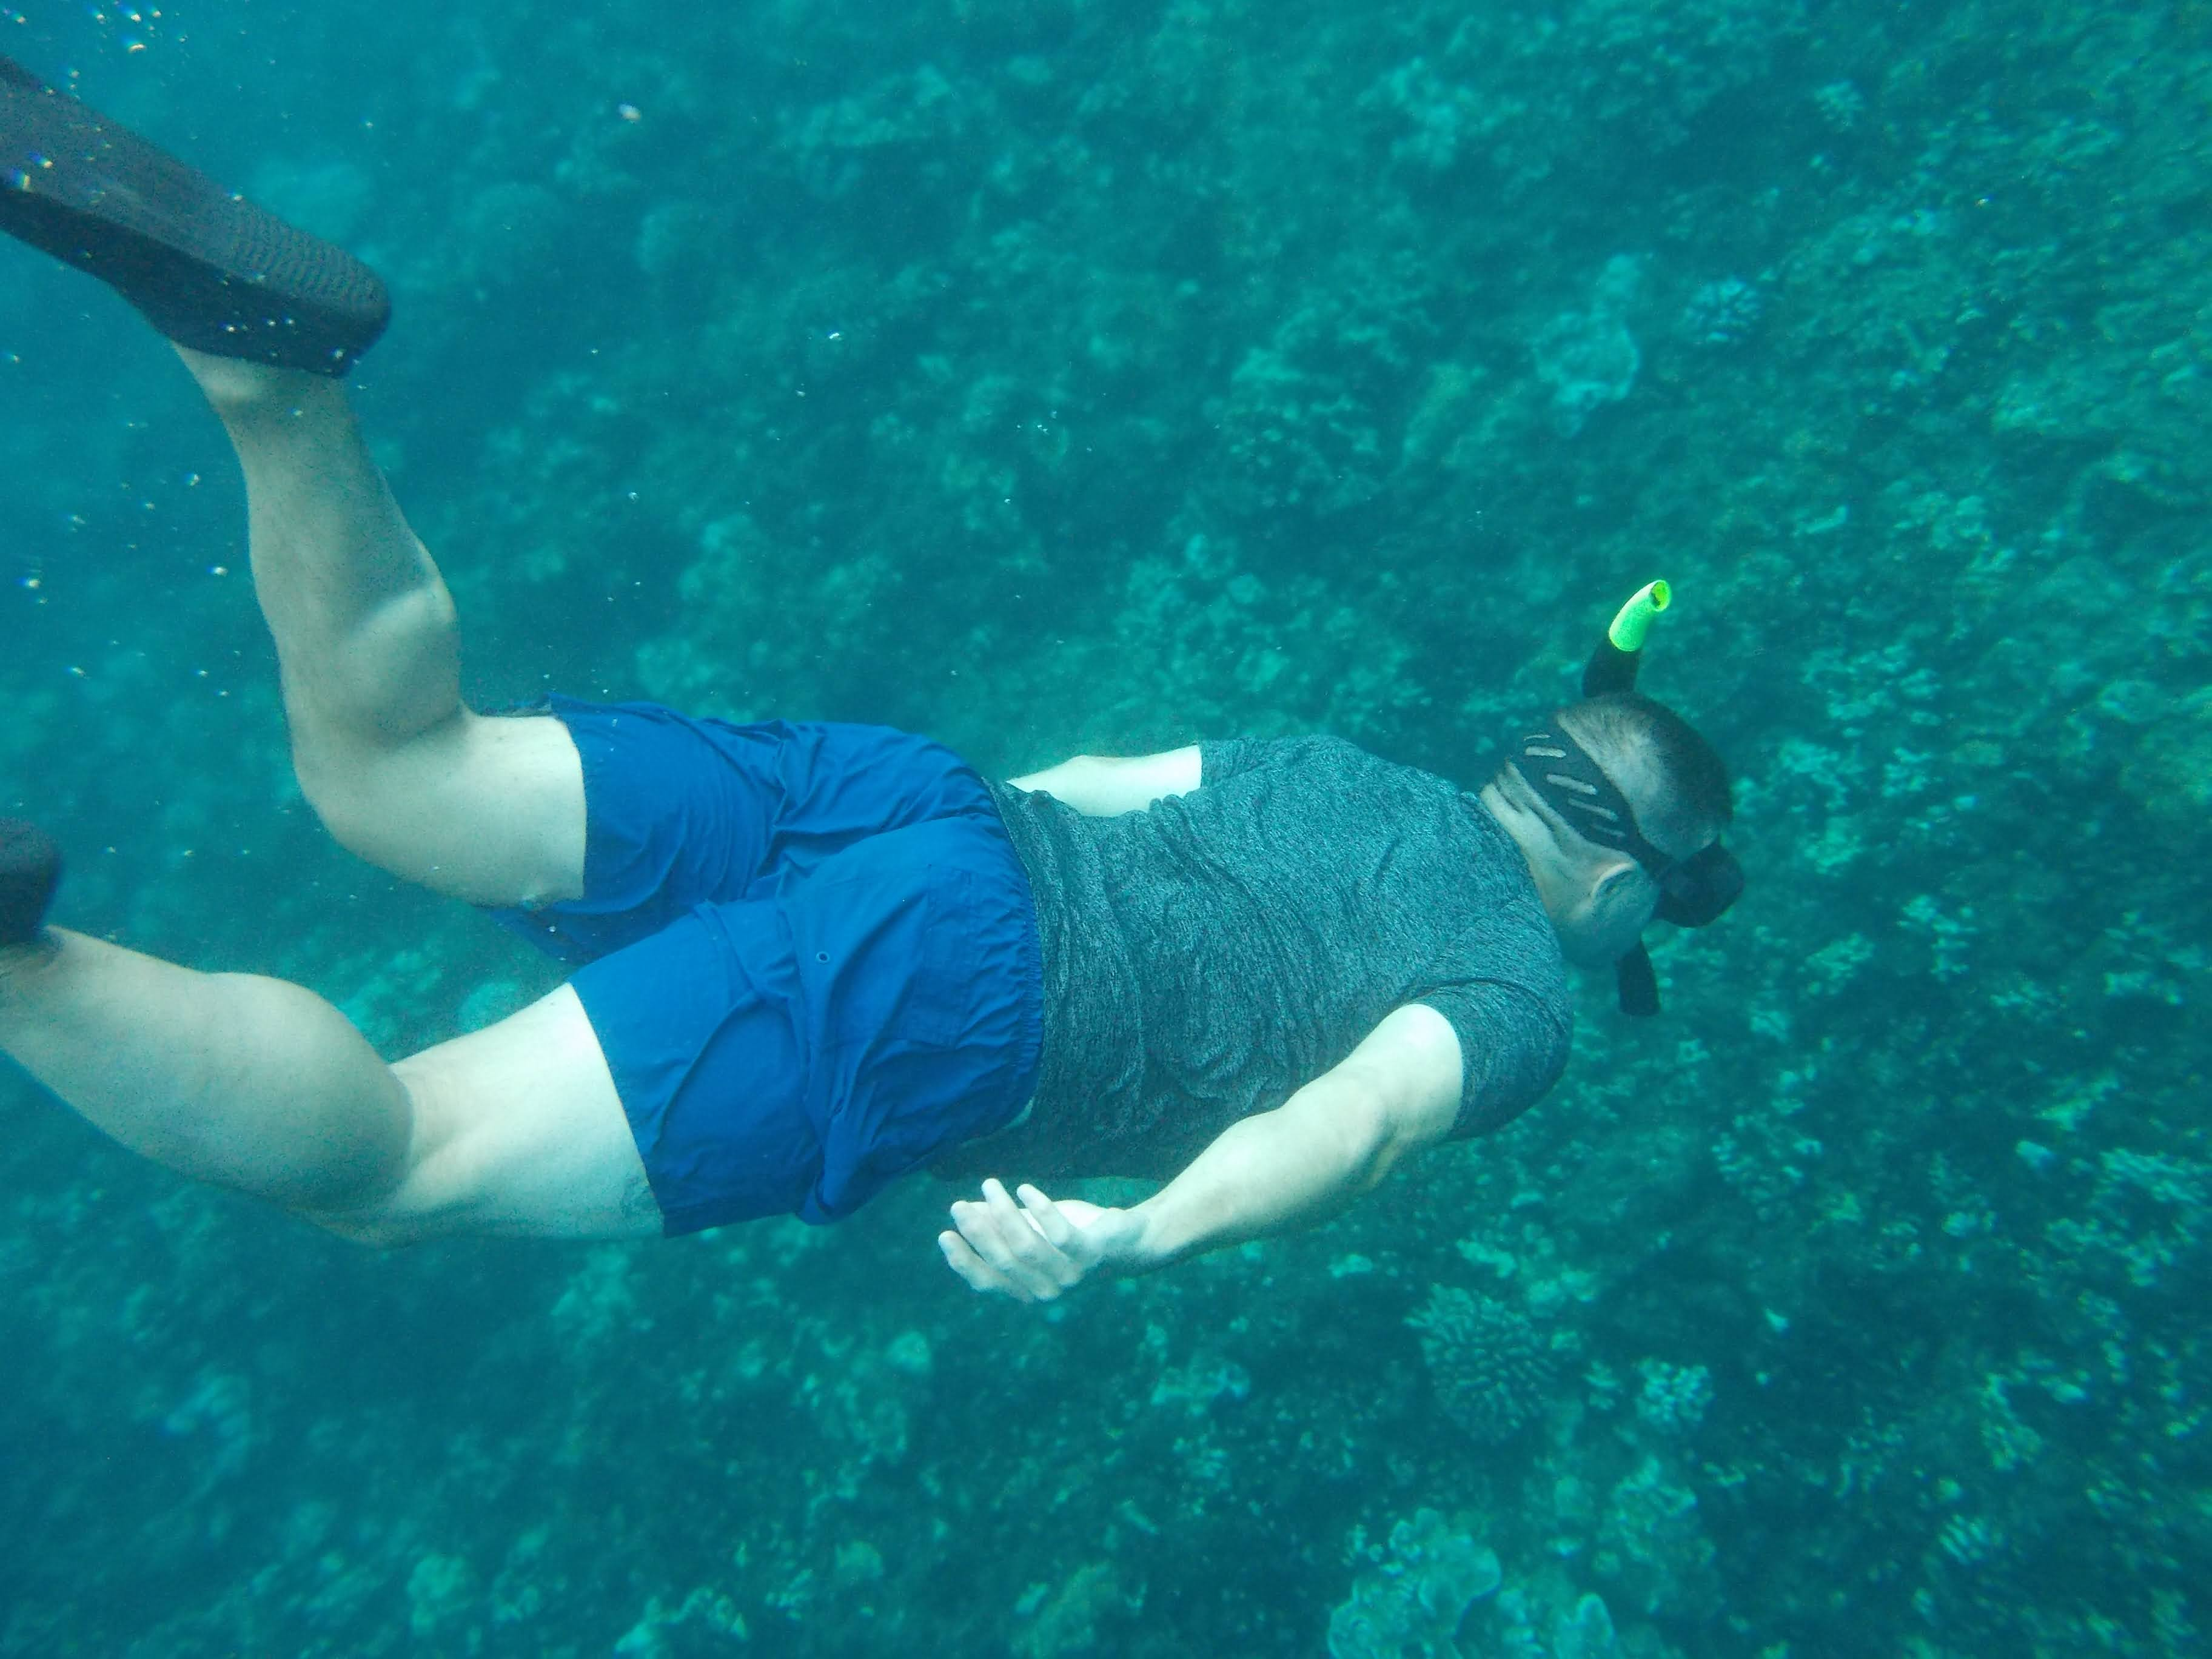 Me diving down snorkling in Honolua Bay, Hawaii